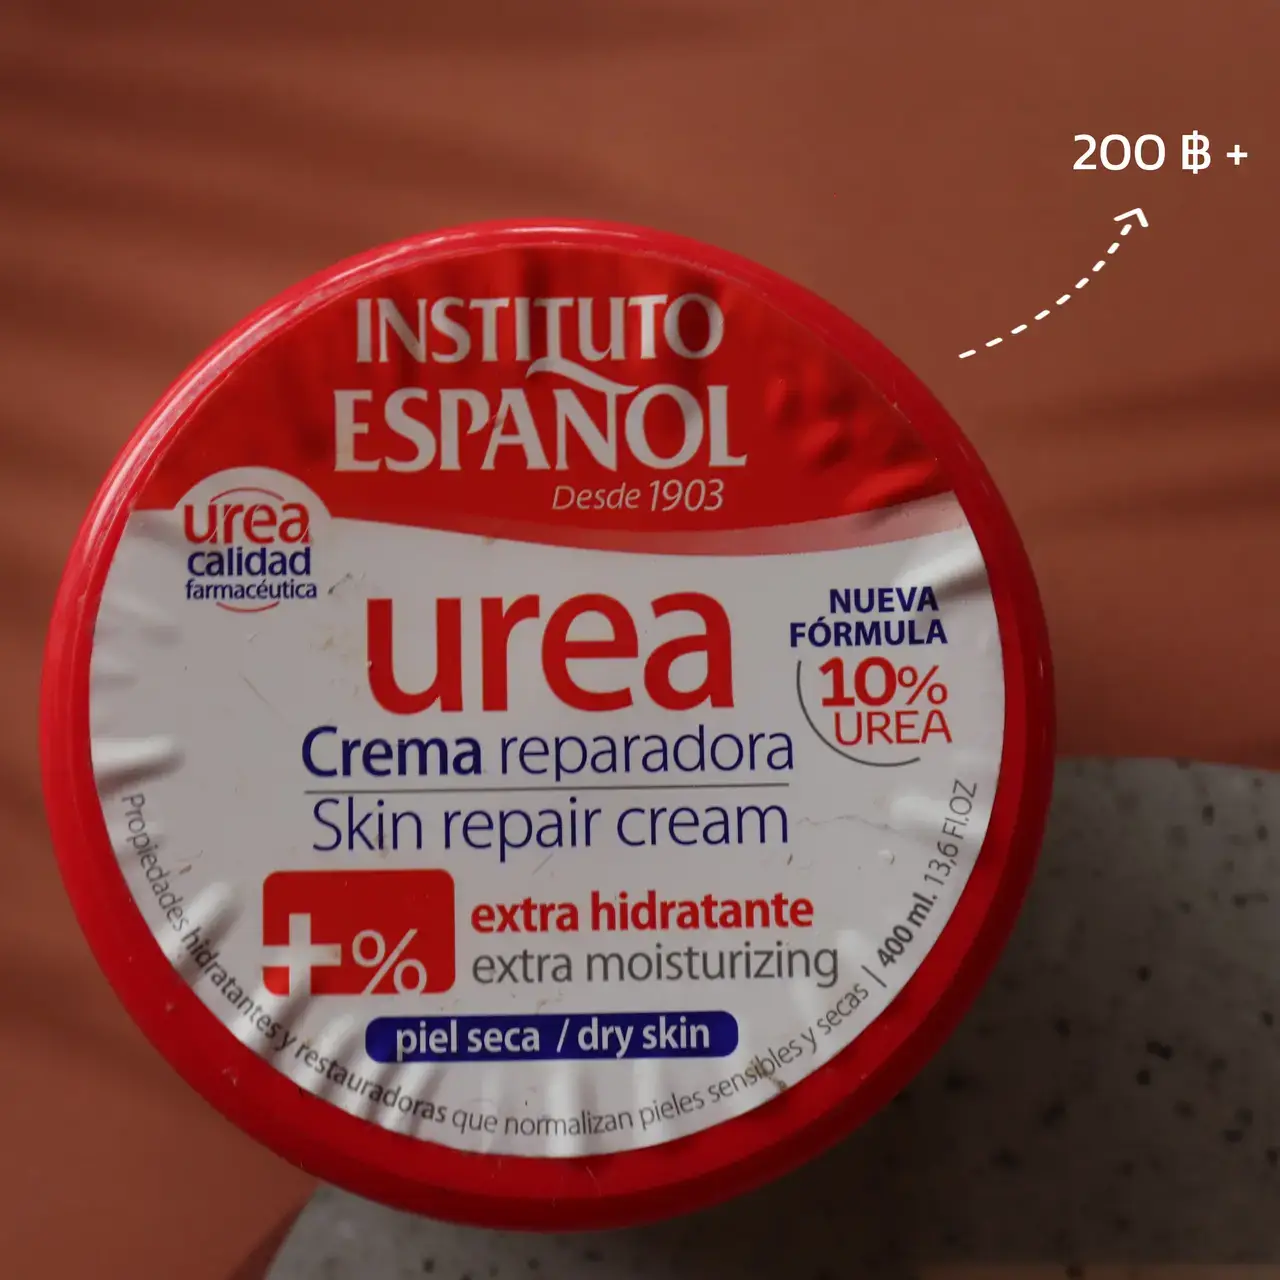 Instituto Espanol Urea Skin Repair Cream - Urea Body Cream